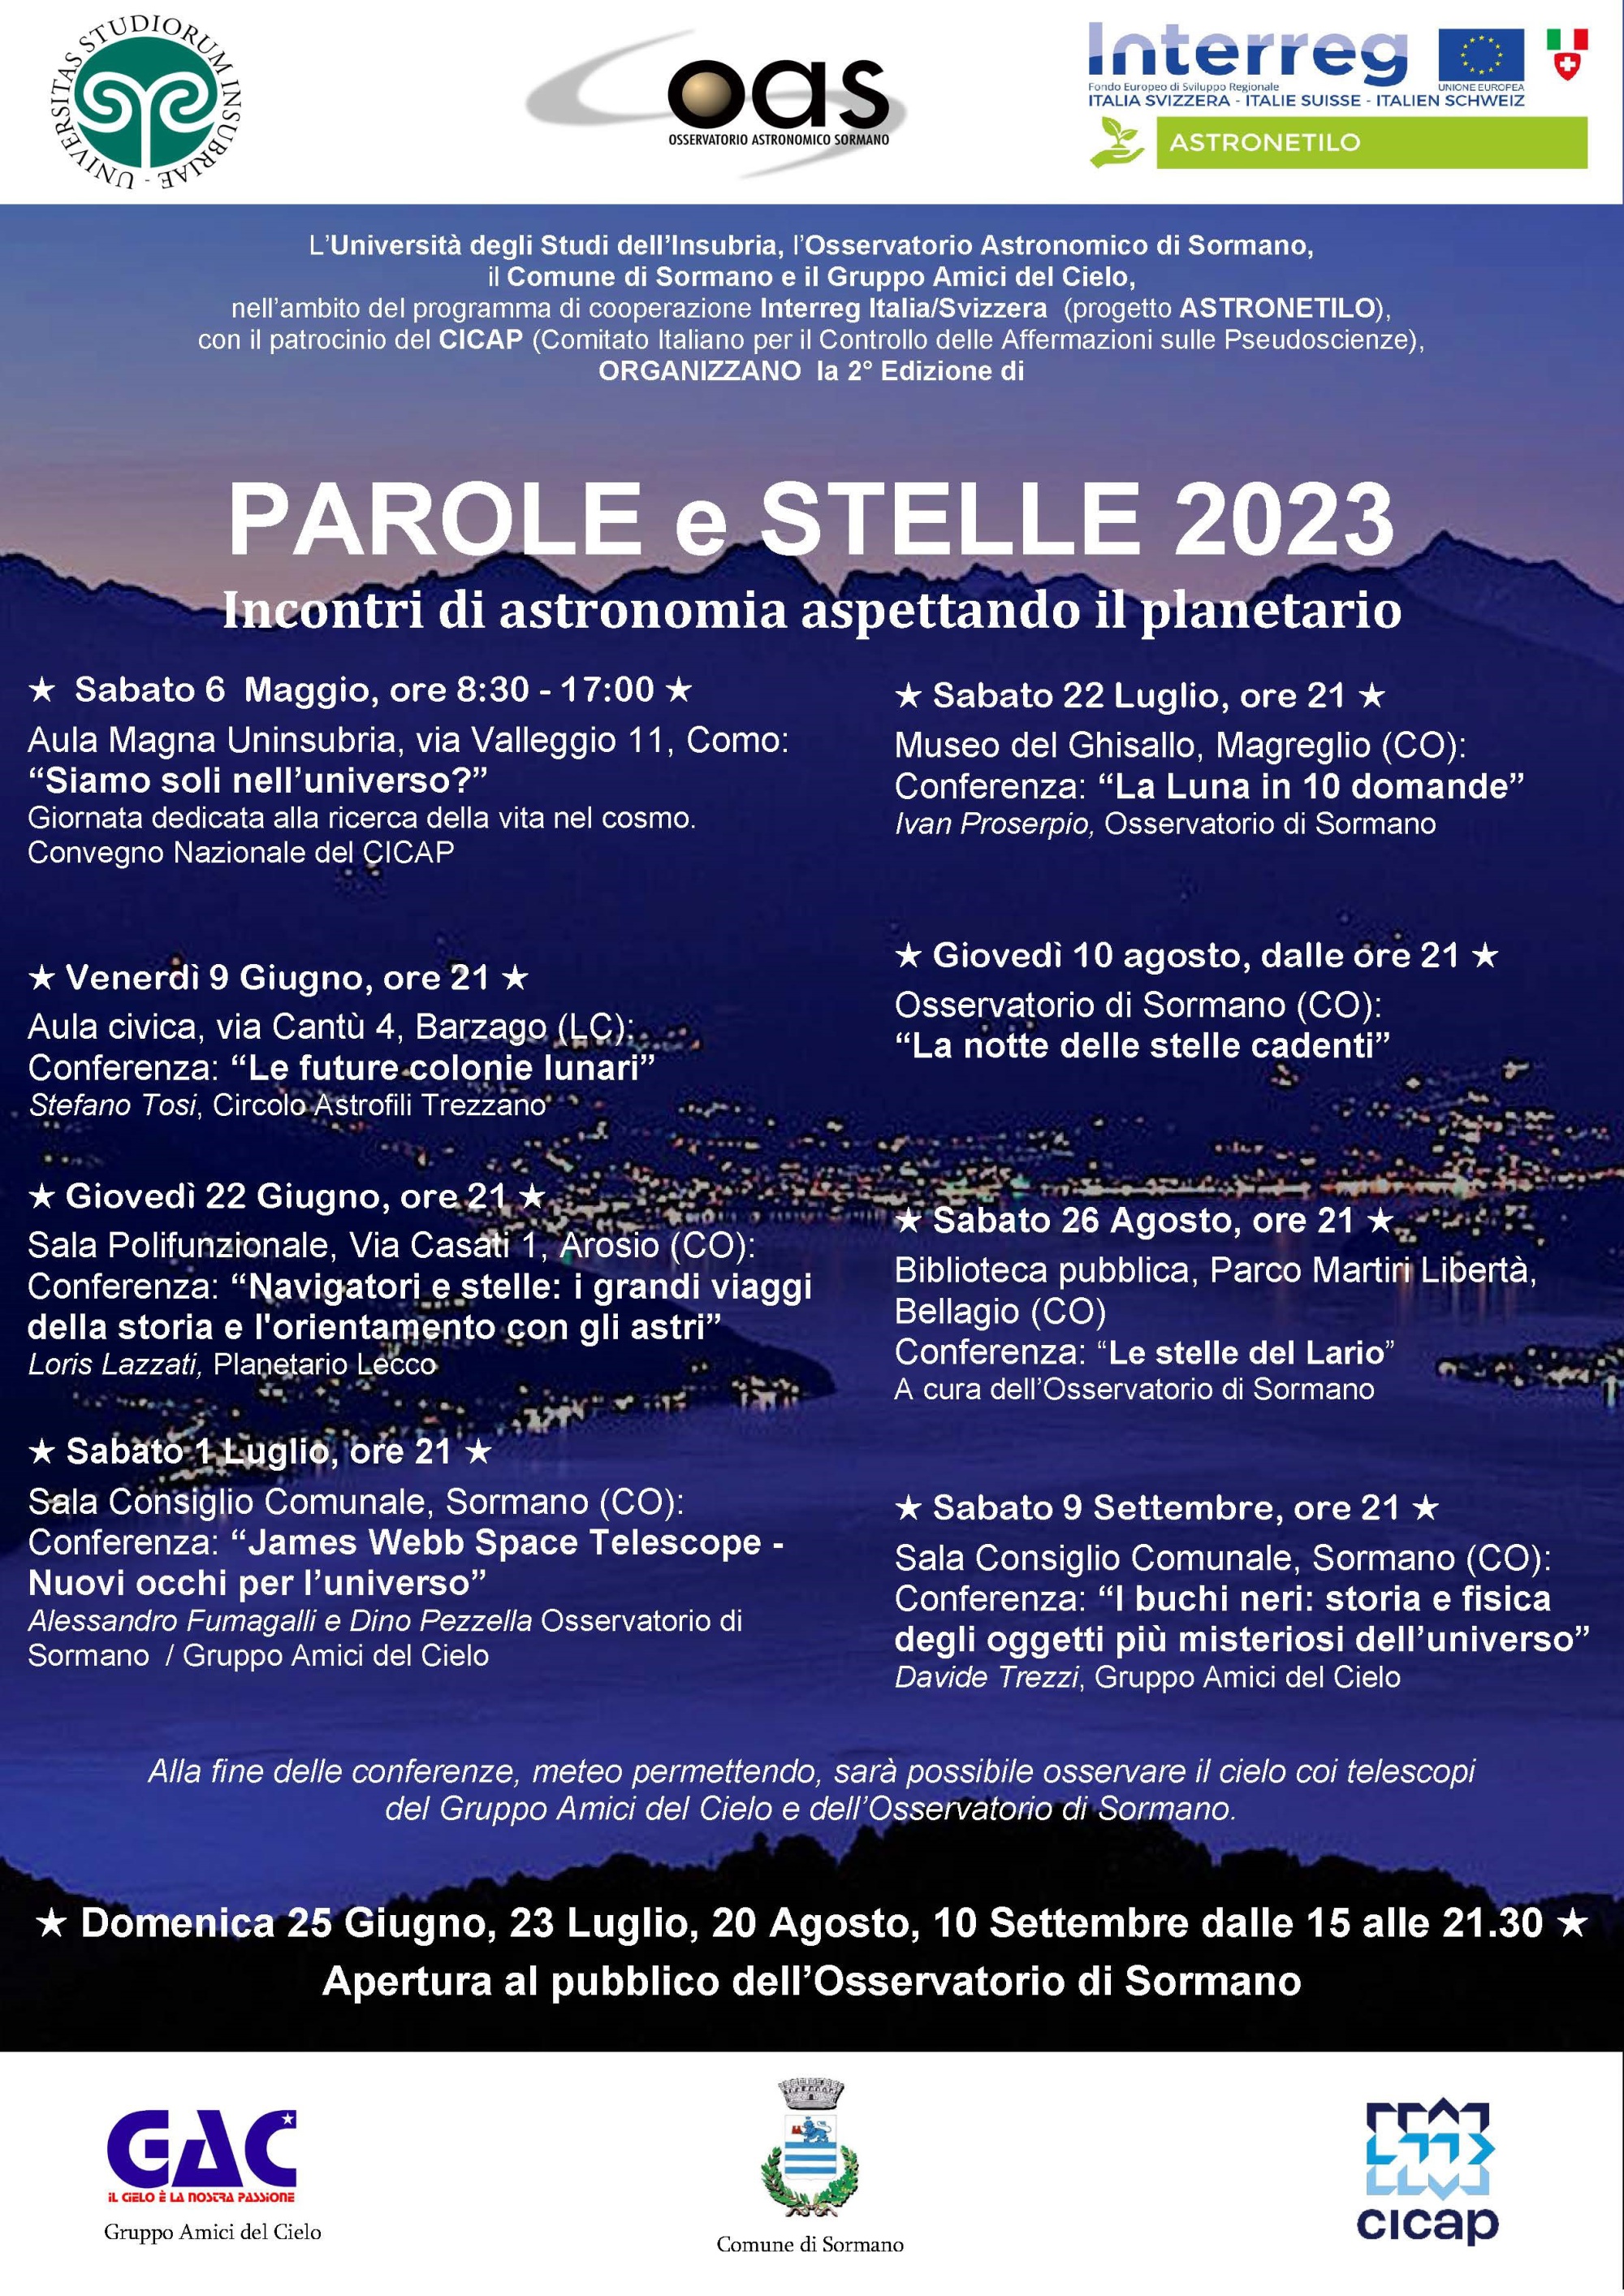 PAROLE e STELLE 2023 - Incontri di astronomia